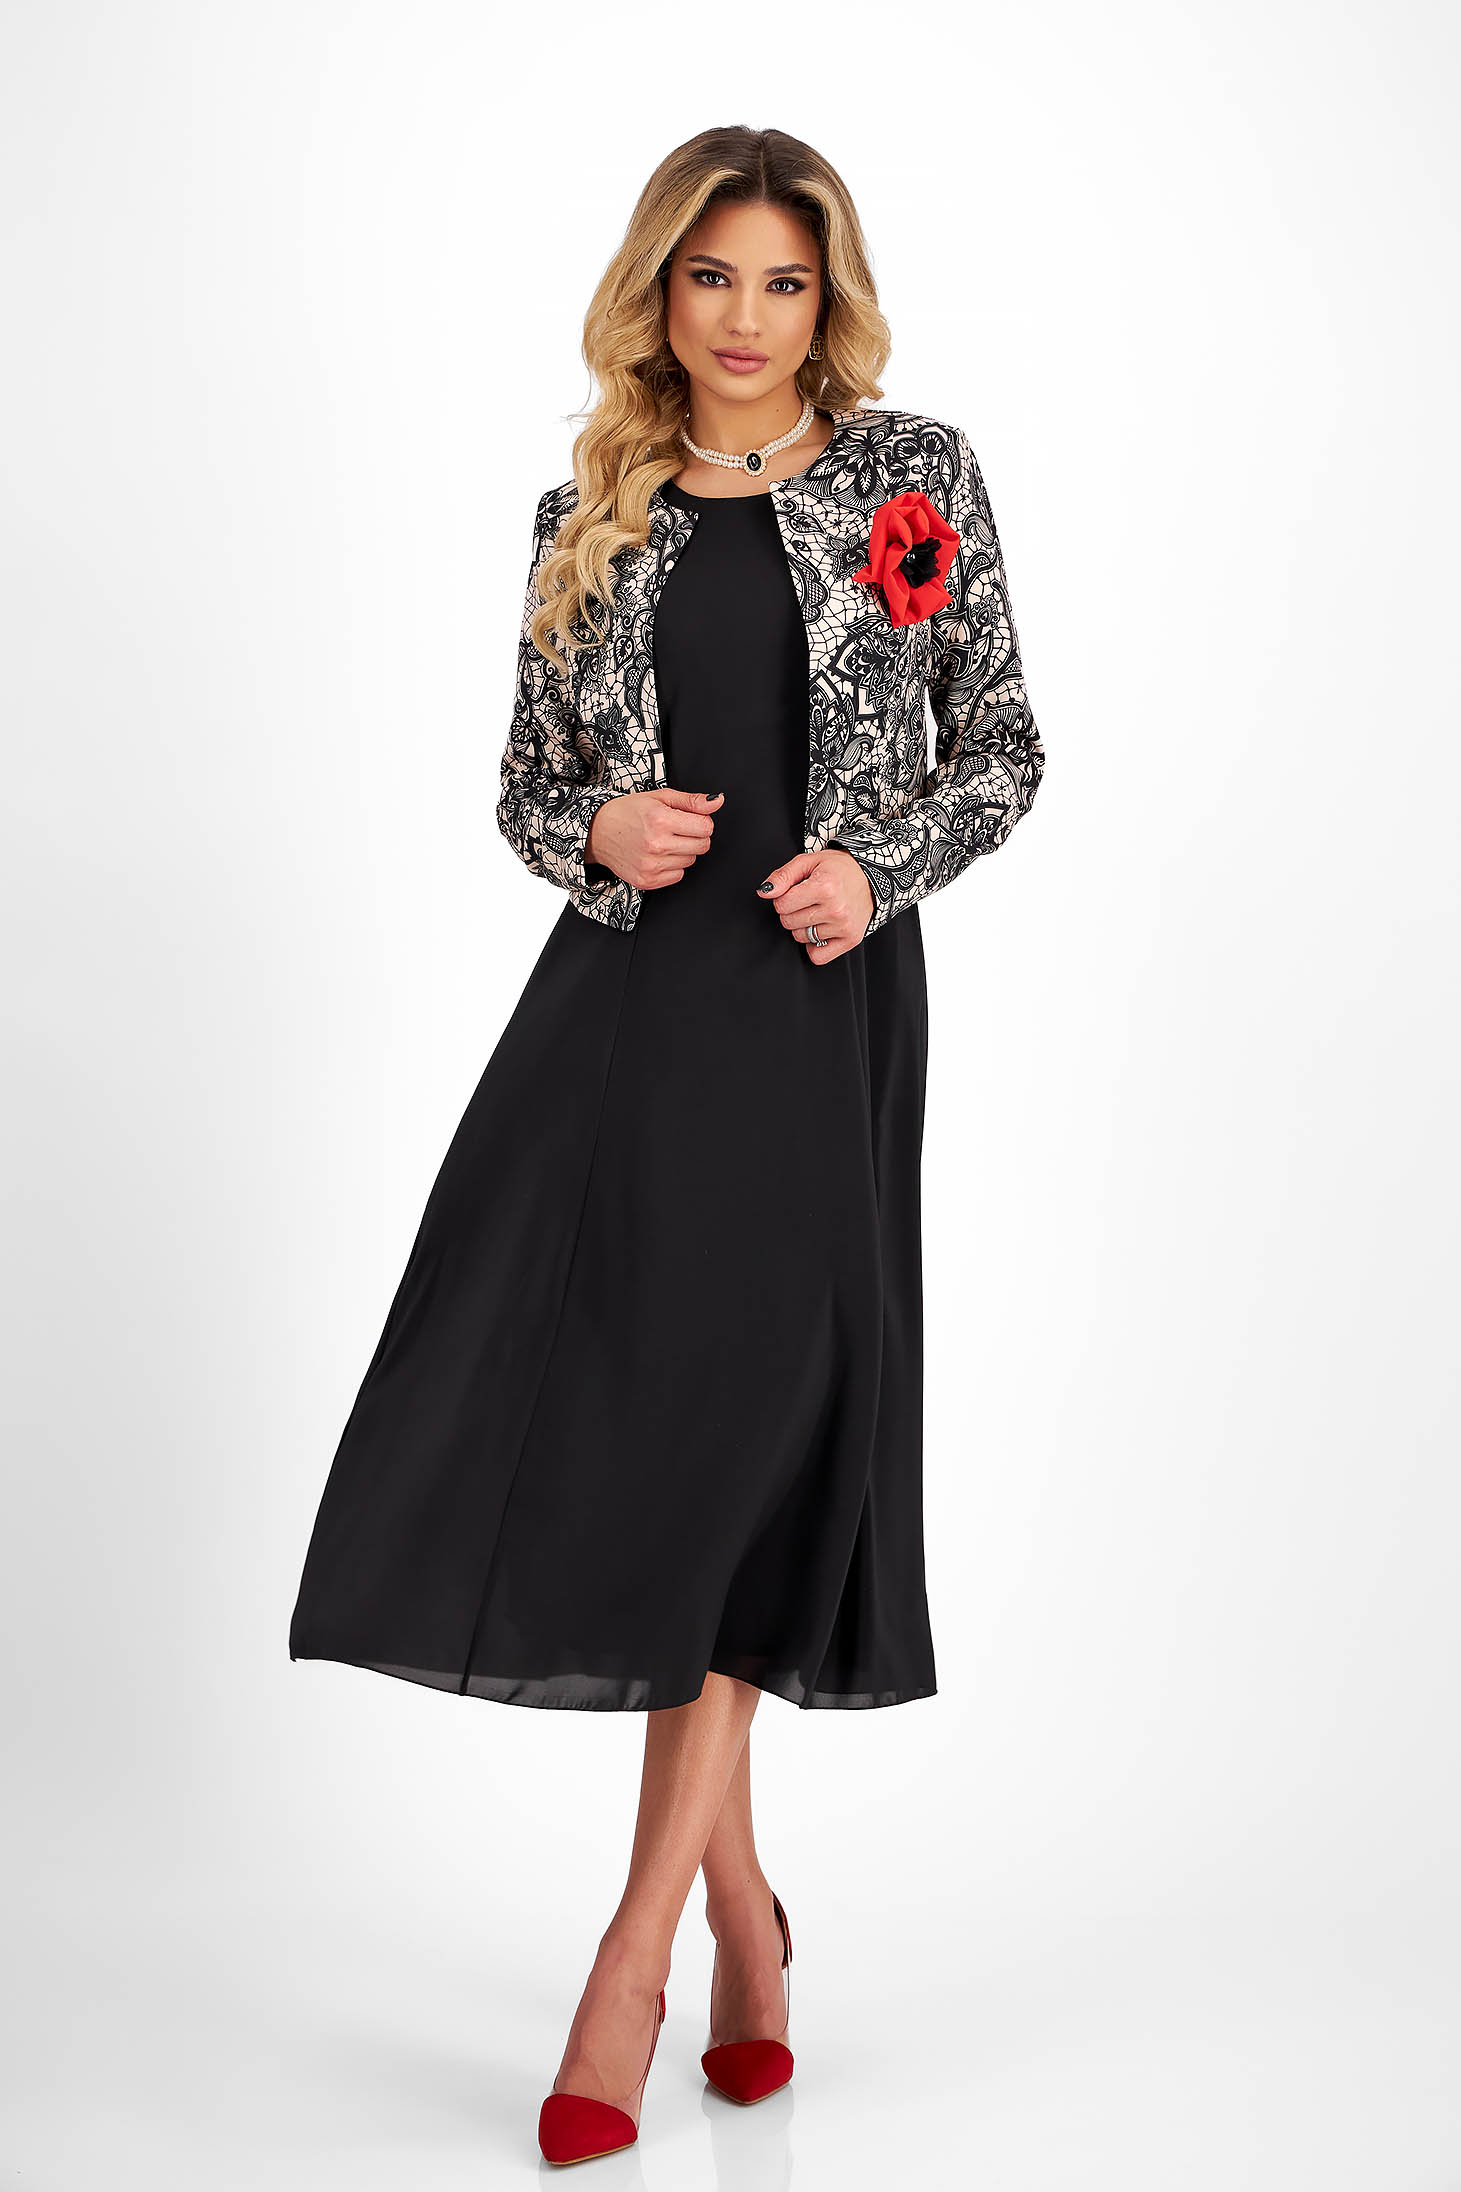 Muszlin és rugalmas szövetü női kosztüm - fekete, bross kiegészítővel - StarShinerS 6 - StarShinerS.hu